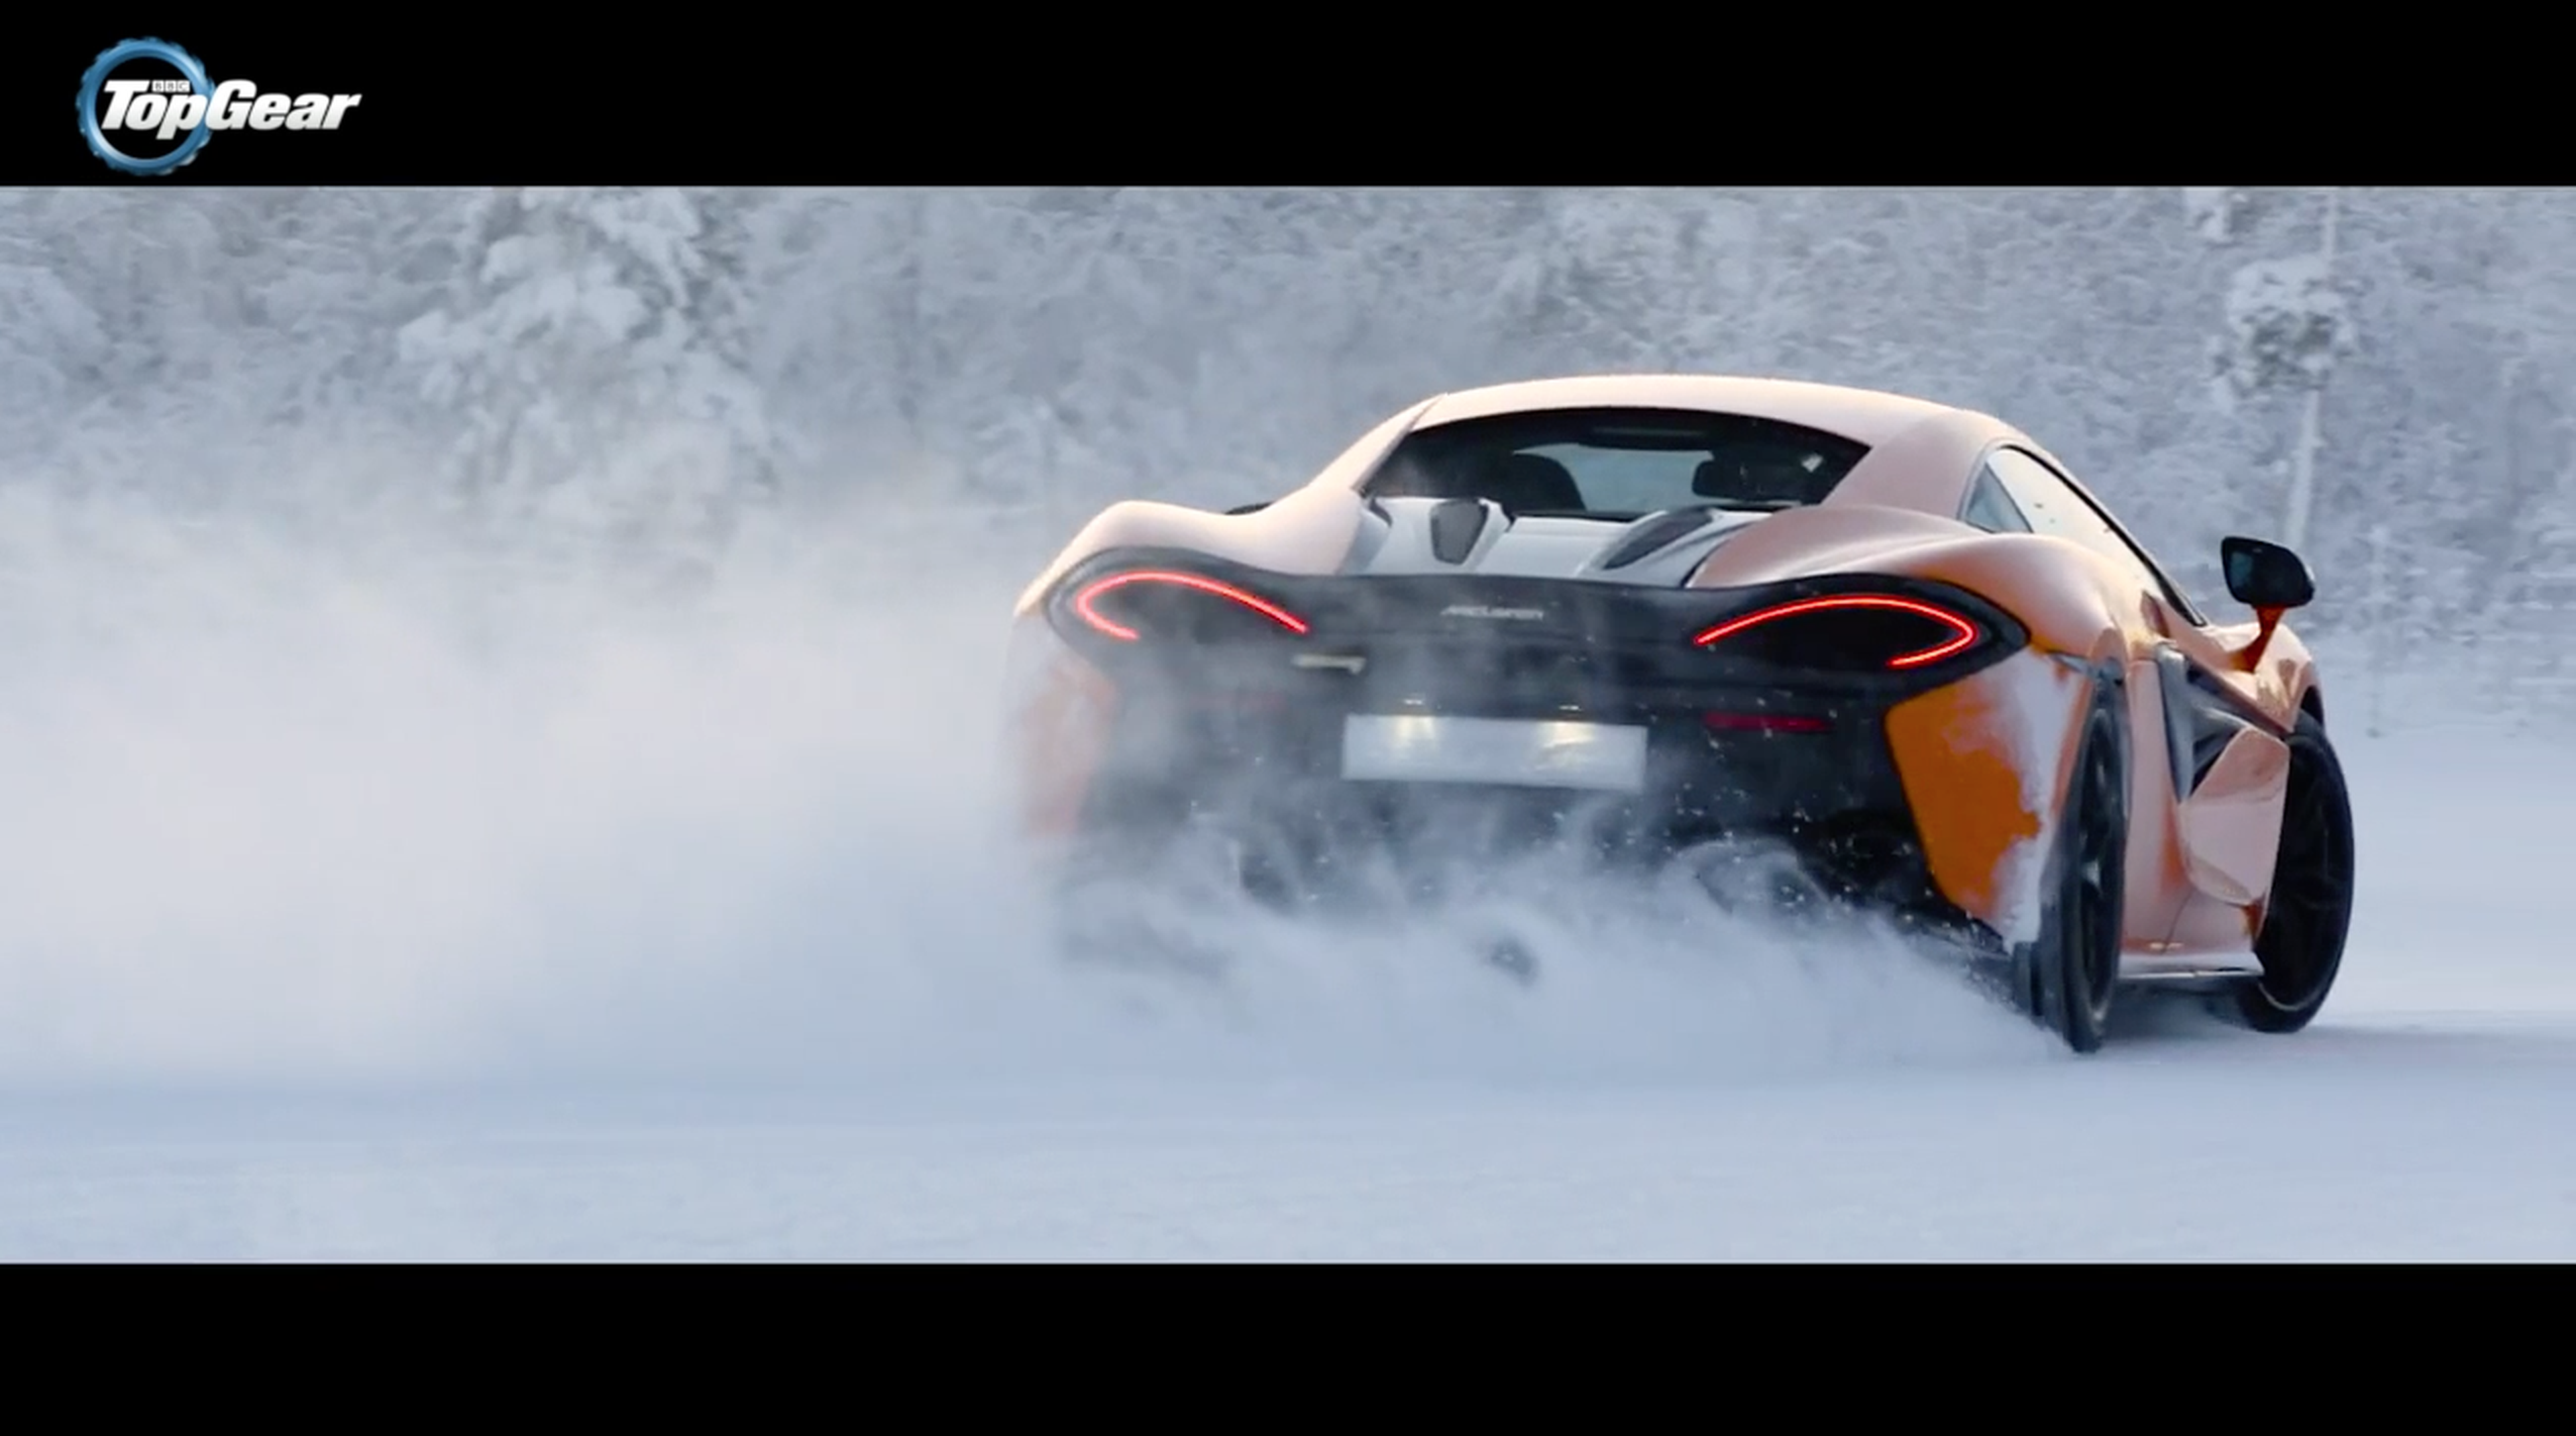 VÍDEO: ¡El invierno acecha! El McLaren 570S bailando sobre hielo [TG]